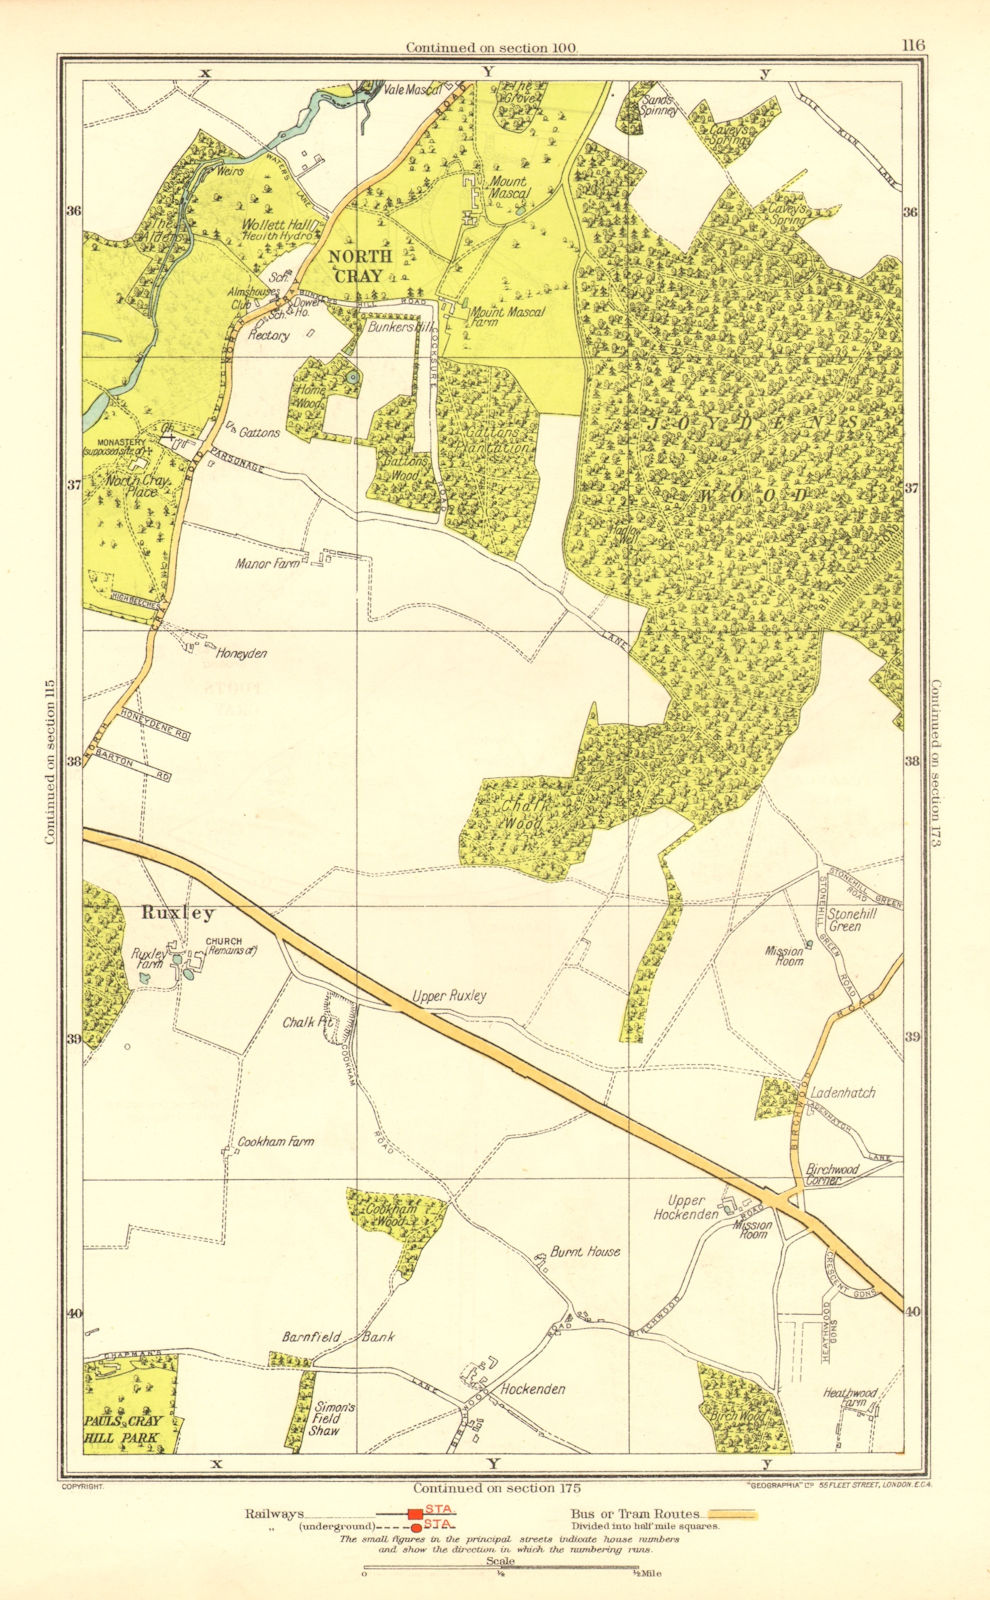 JOYDEN'S WOOD. North Cray Foot's Cray Ruxley Swanley 1937 old vintage map